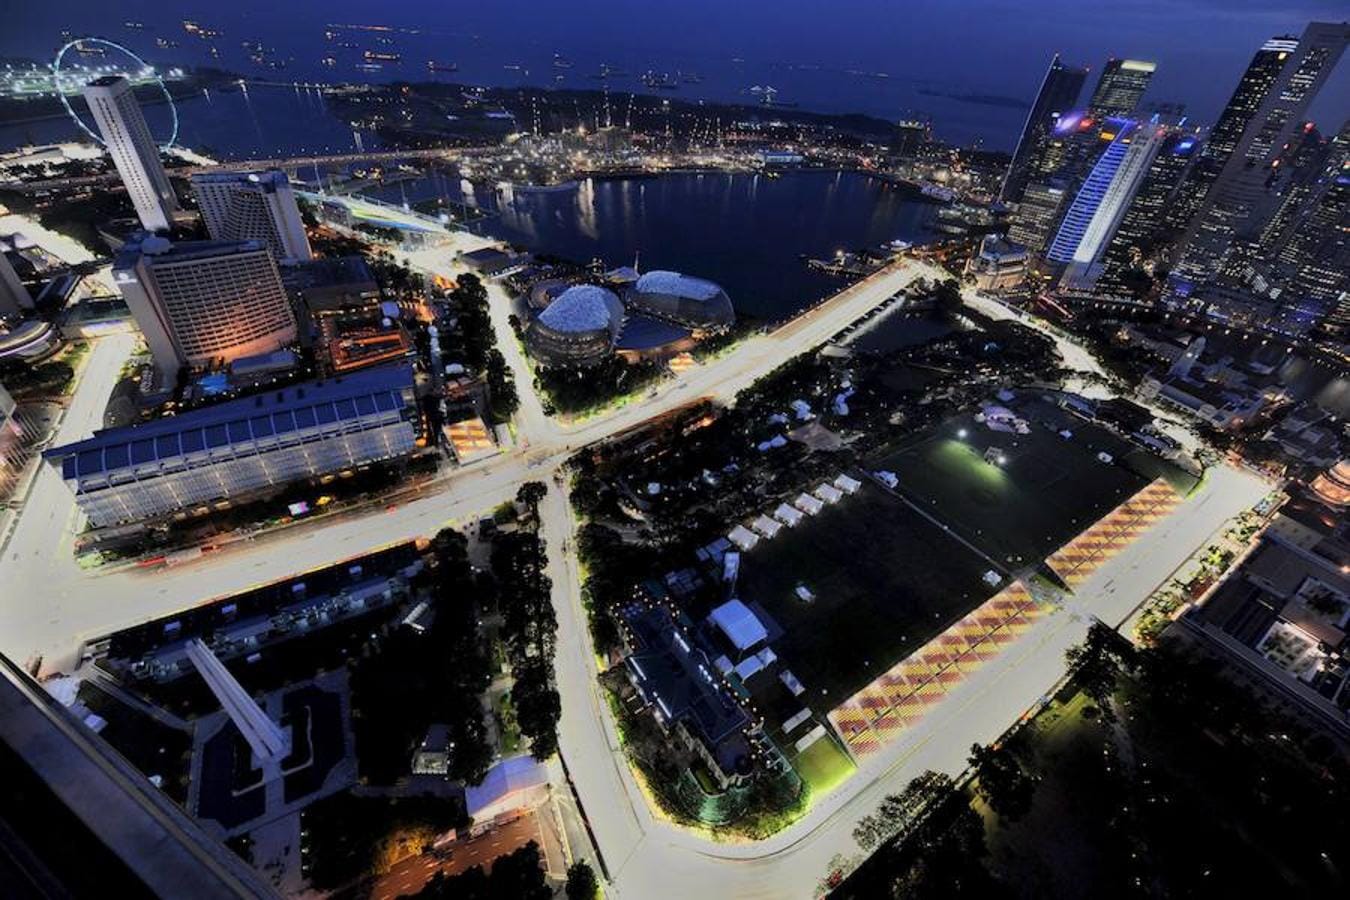 El GP de Singapur es el más vanguardista hoy en día. Una carrera nocturna en un trazado urbano iluminado por 2.000 focos